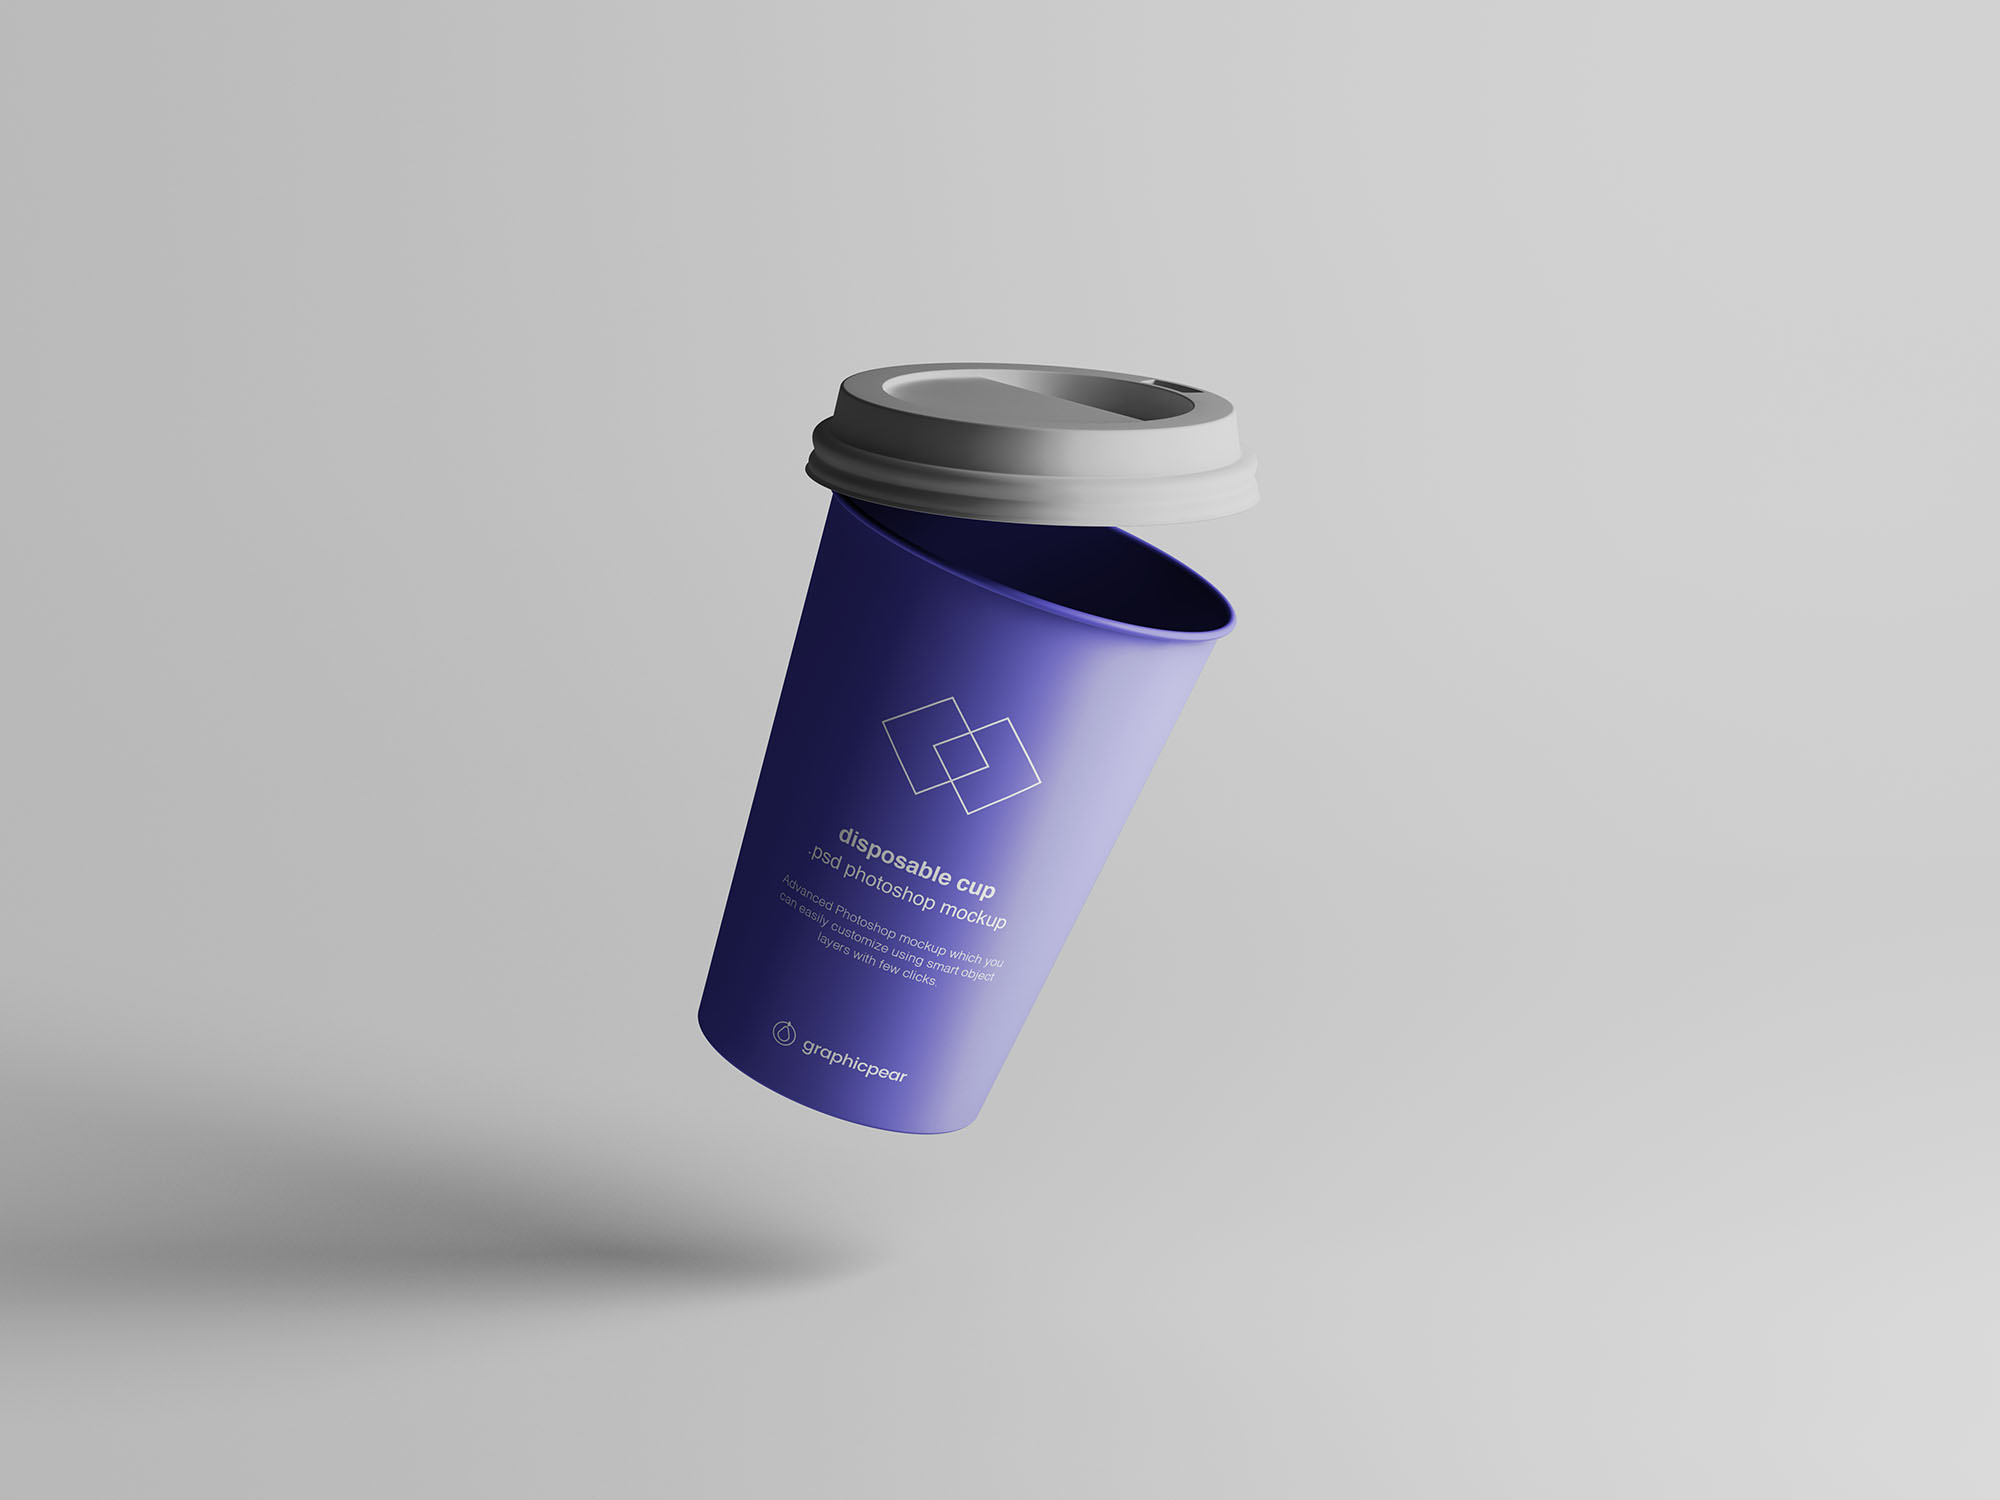 7个咖啡纸杯定制外观设计效果图样机模板 7 Coffee Cup Mockups插图(3)